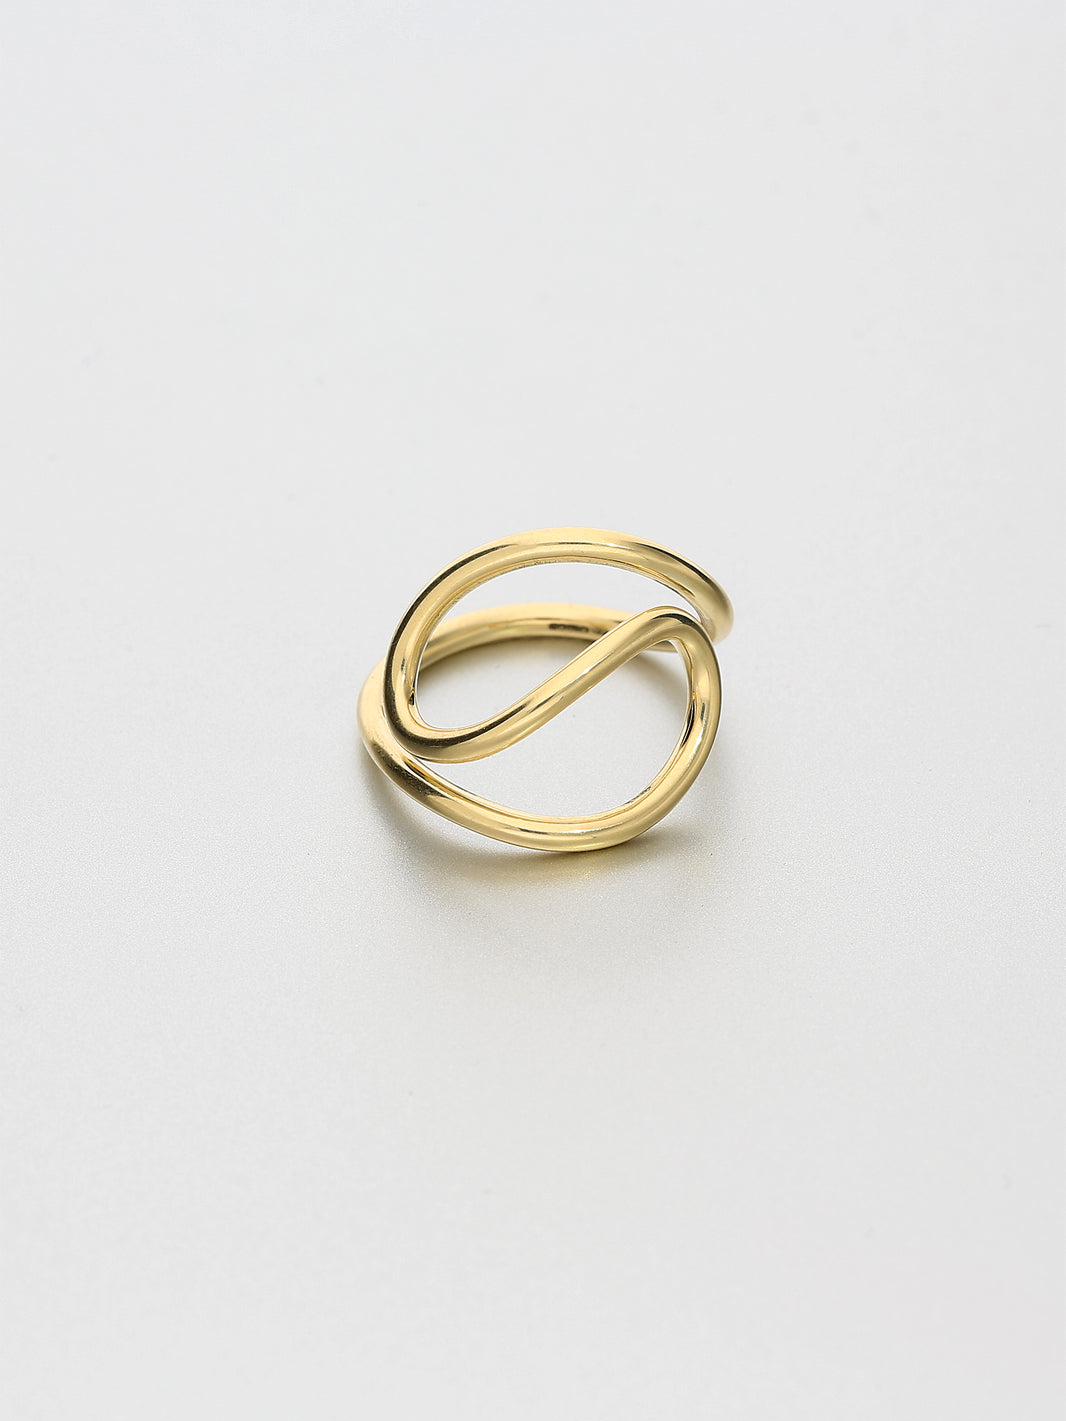 Aeon Ring, VII Yellow gold